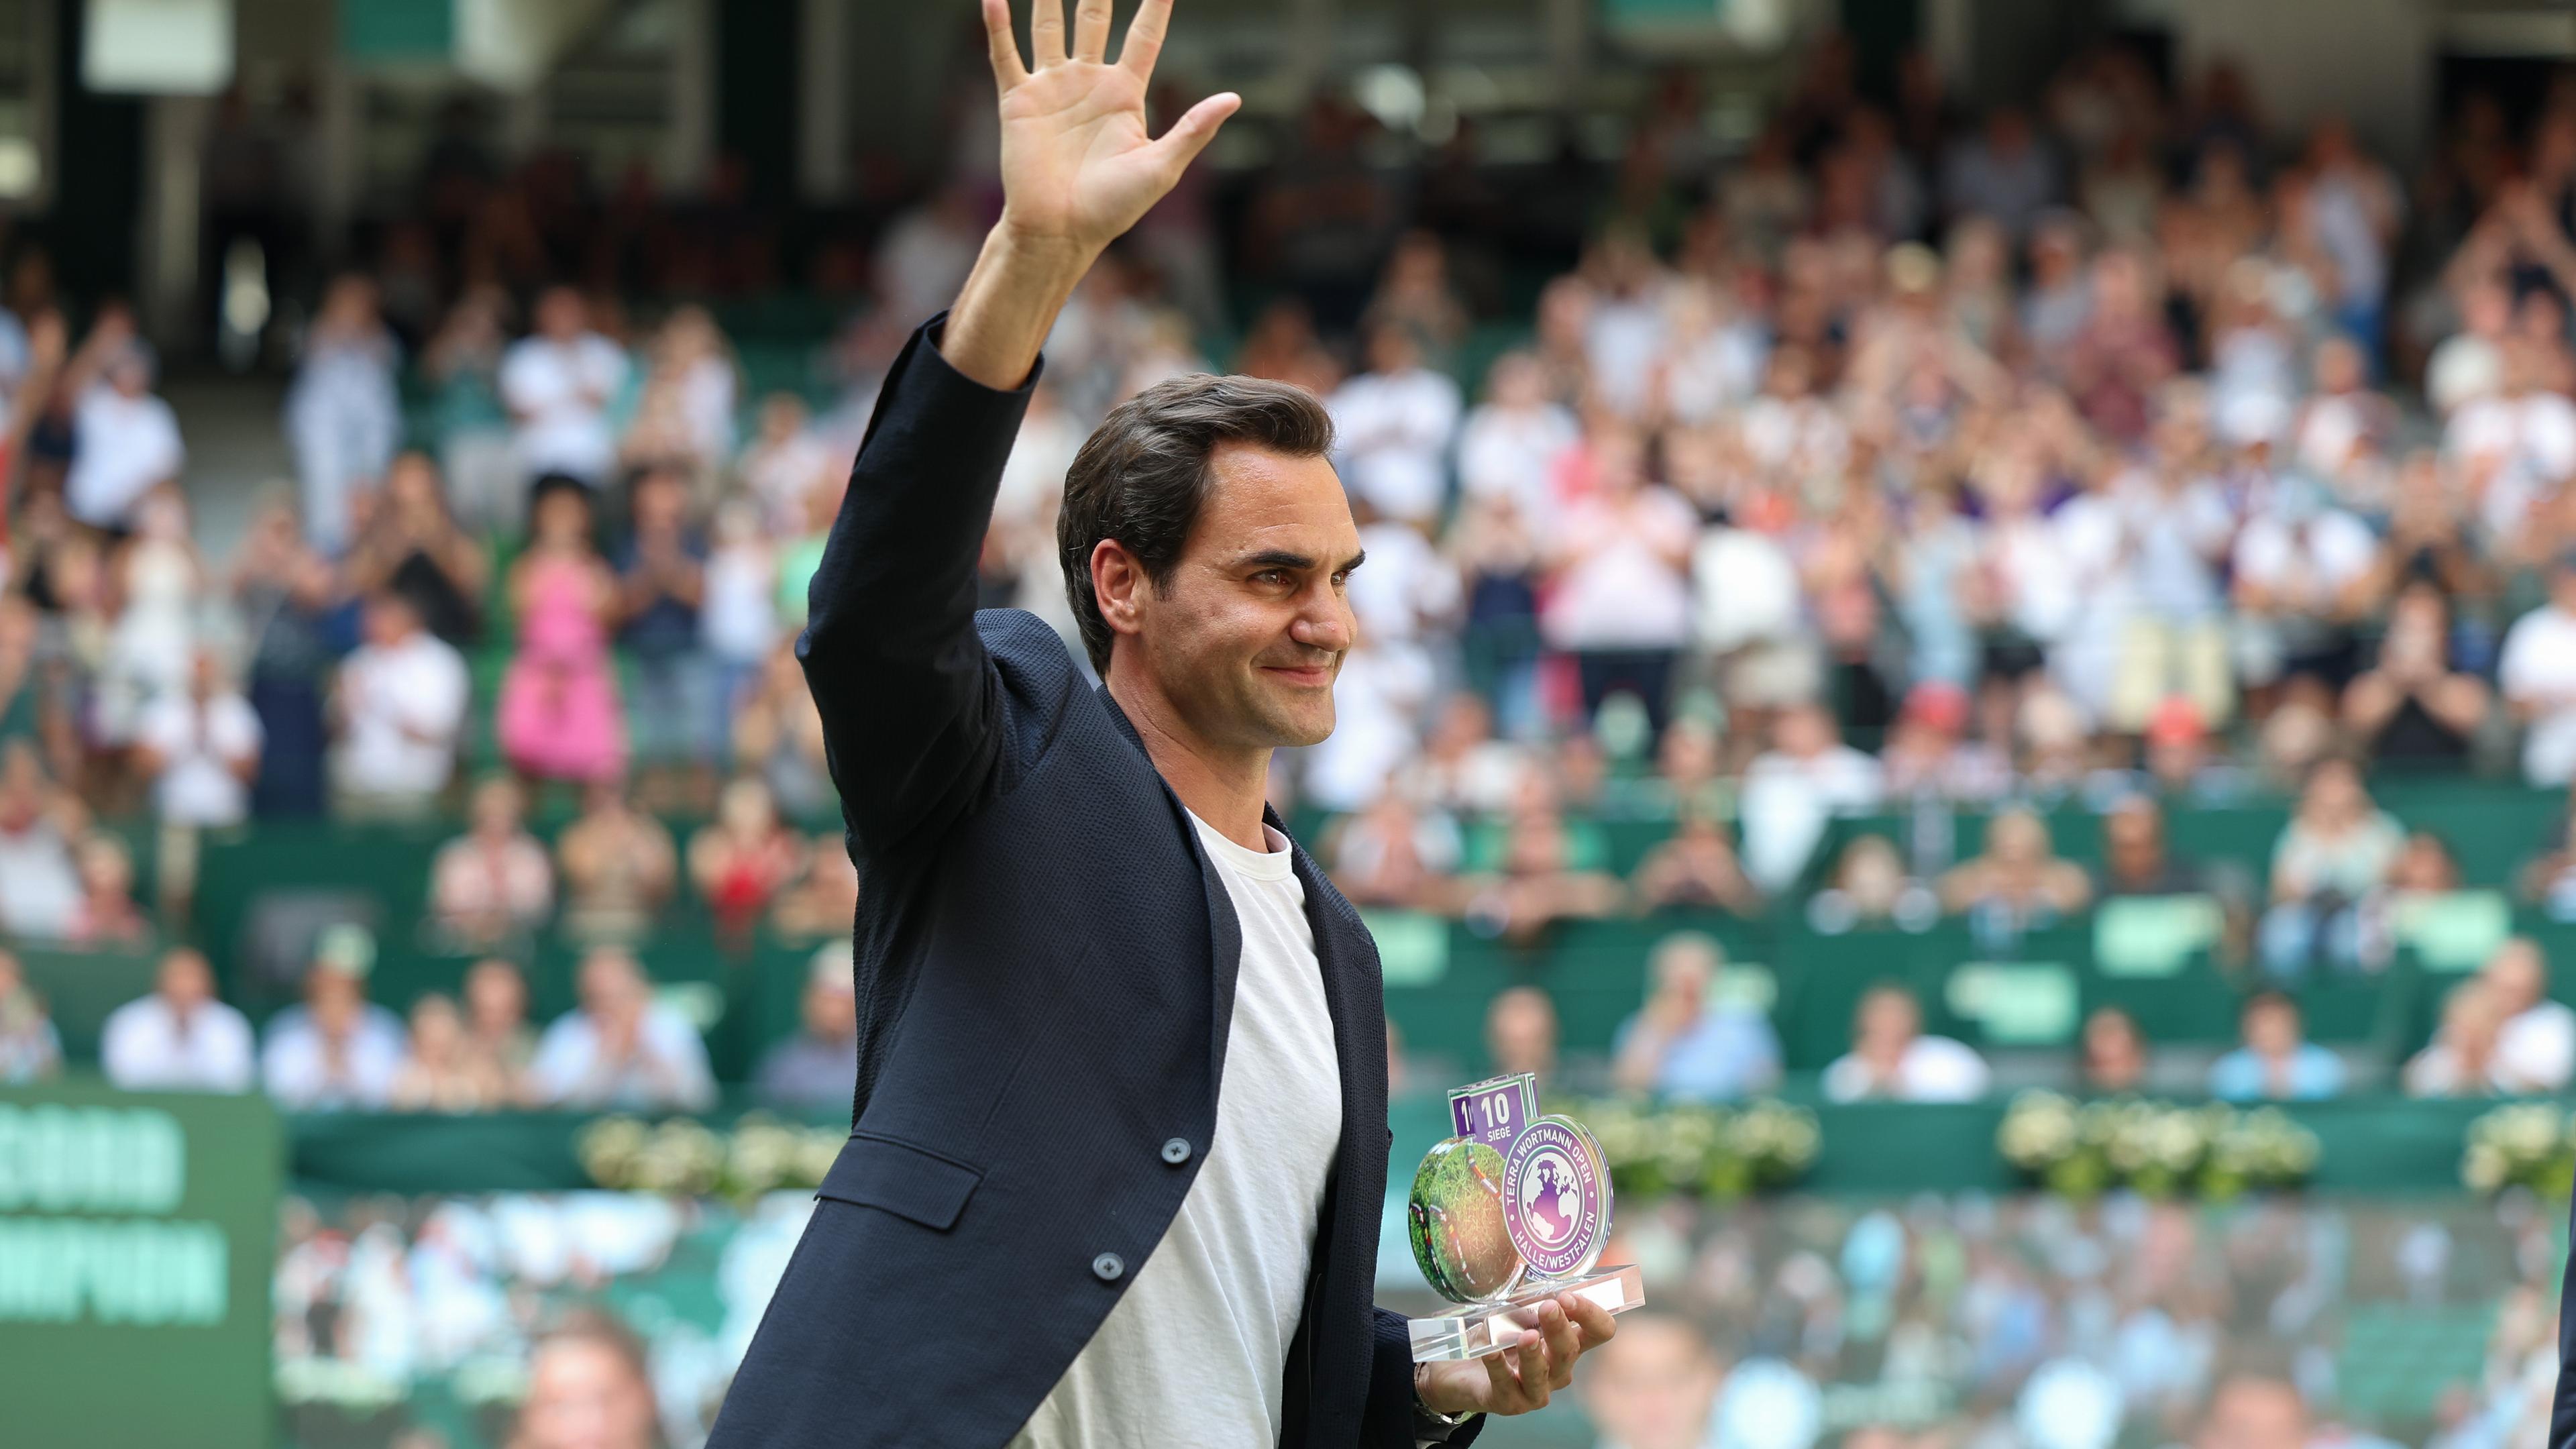 Rogerer Federer winkt beim Turnier in Halle ins Publikum, nachdem er geehrt wurde